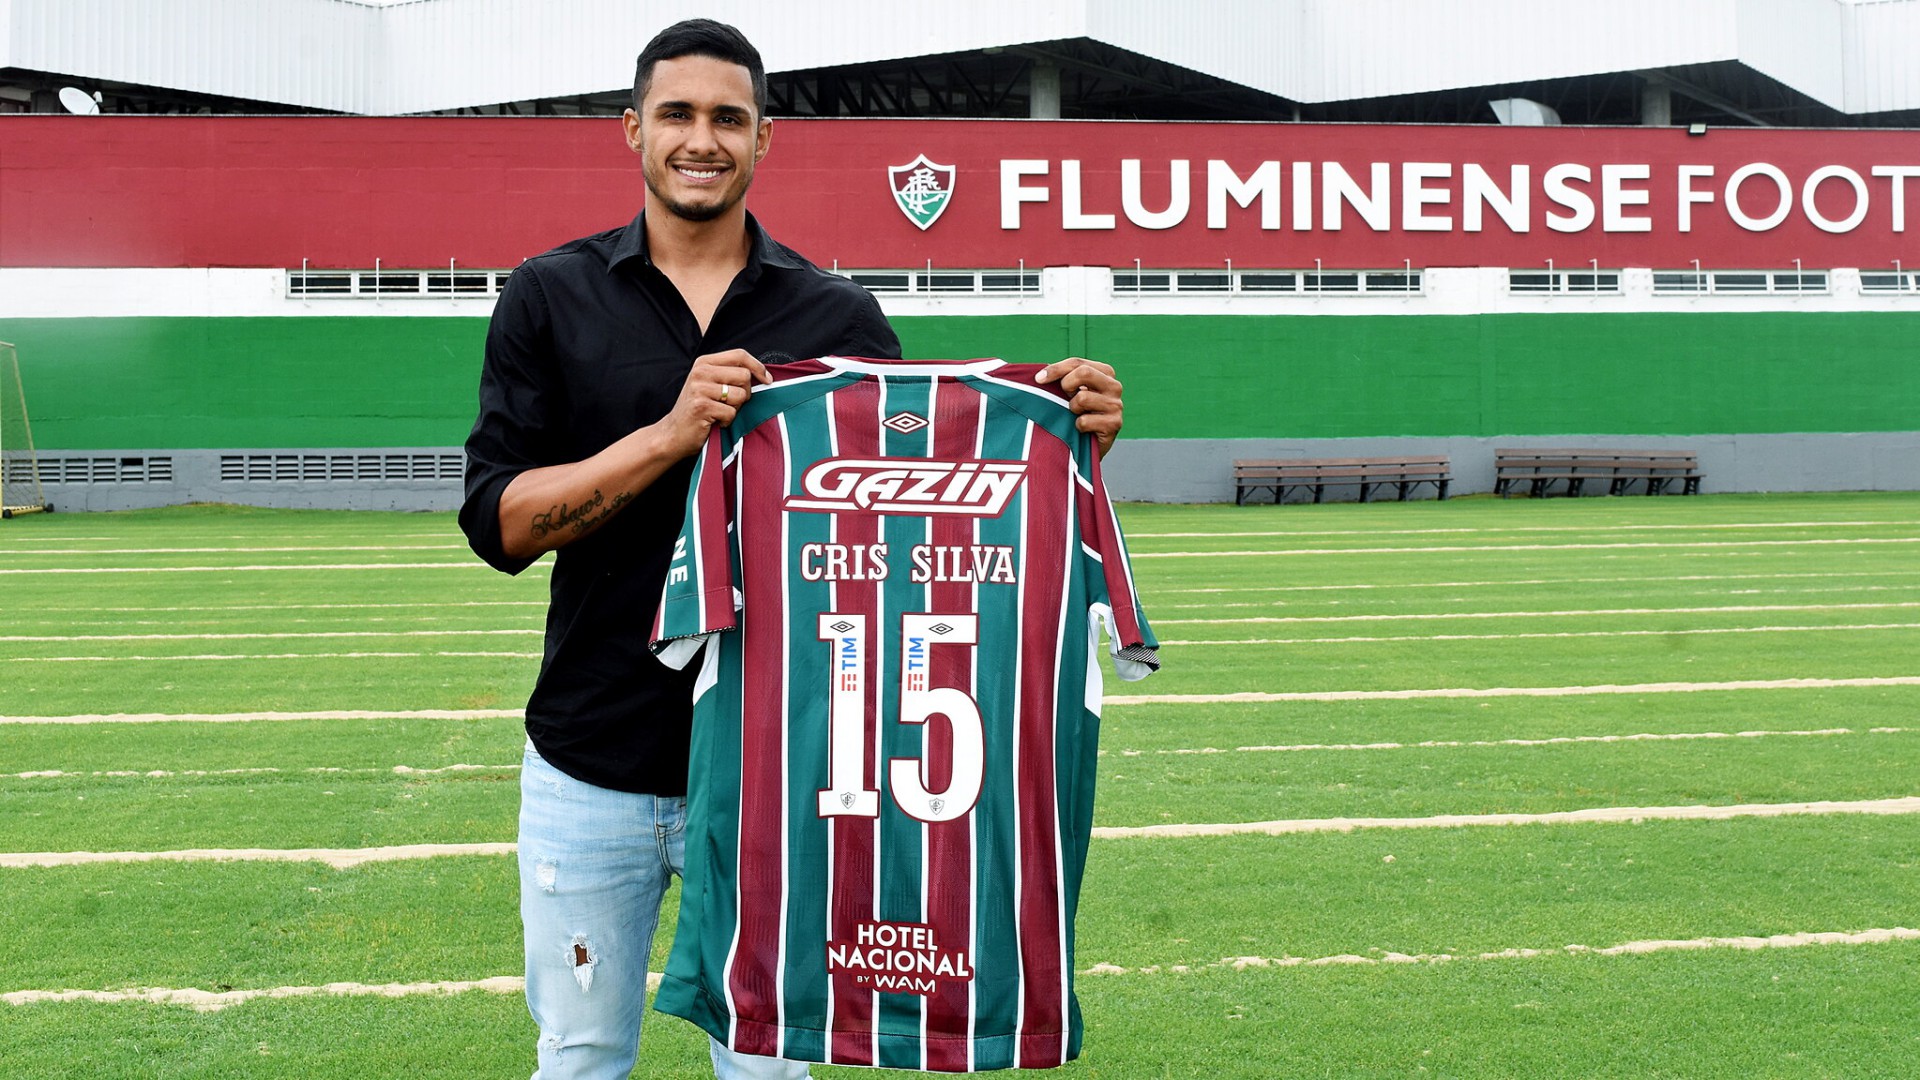 Sétima contratação na área: Fluminense anuncia Cristiano